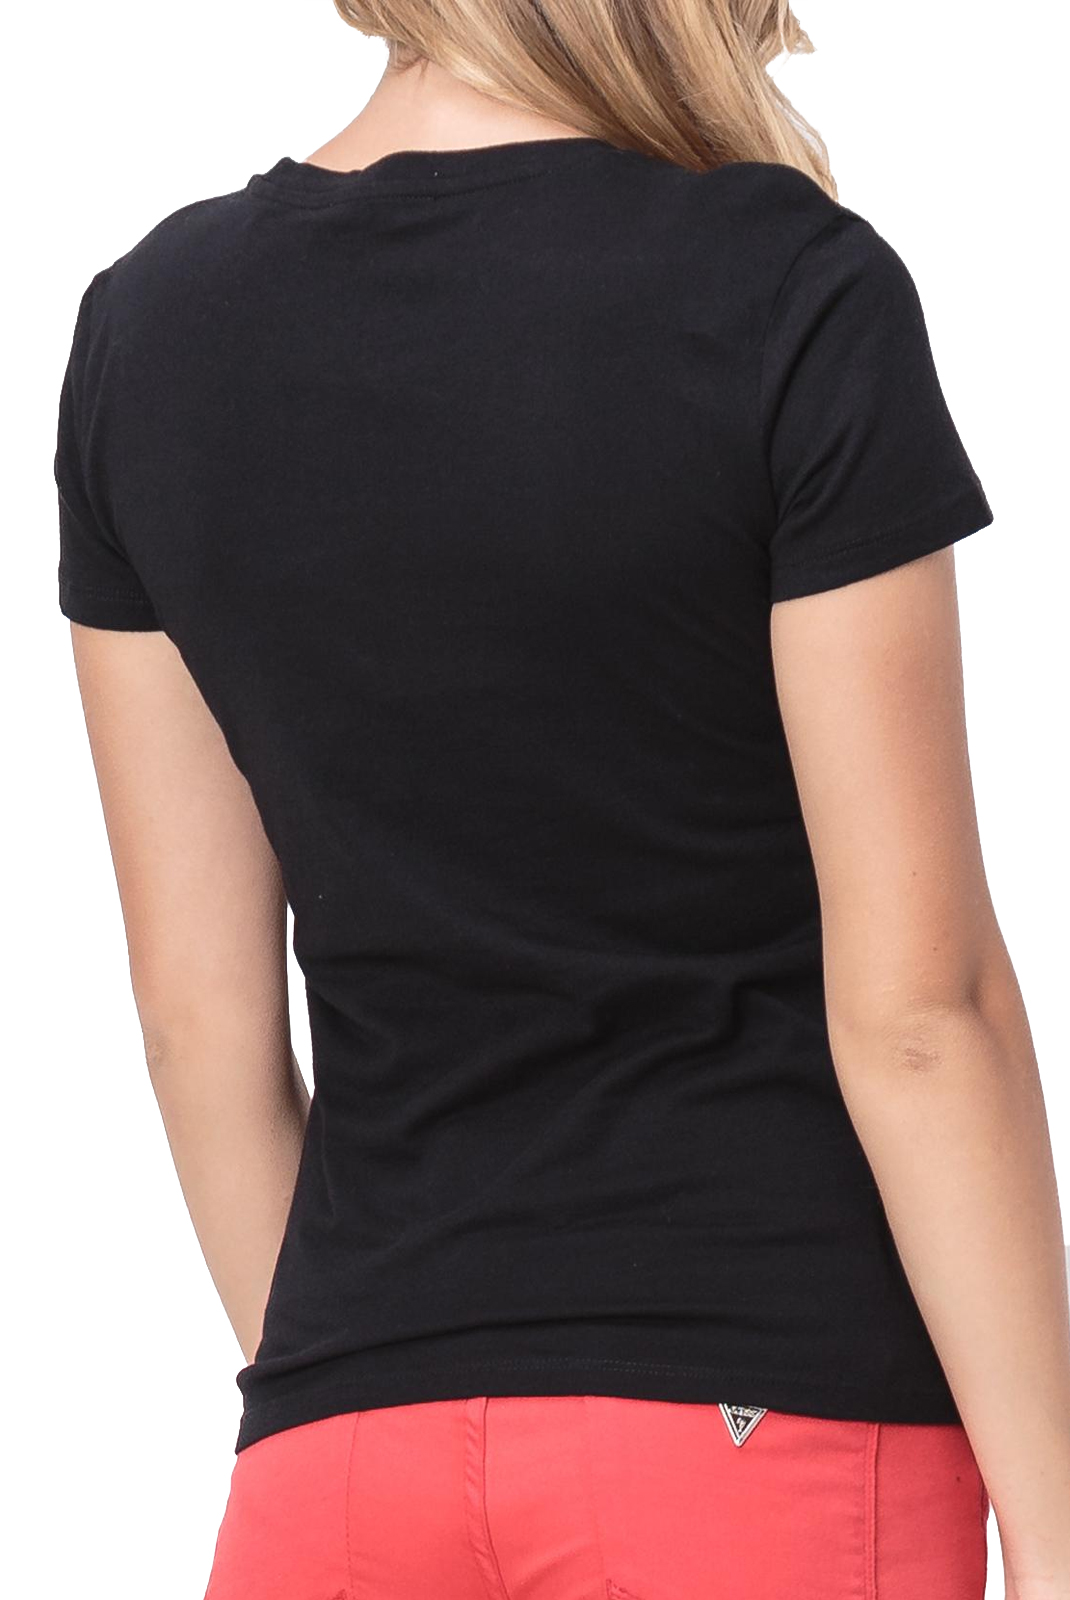 Tee-shirt noir strasse print femme Guess - W92i53